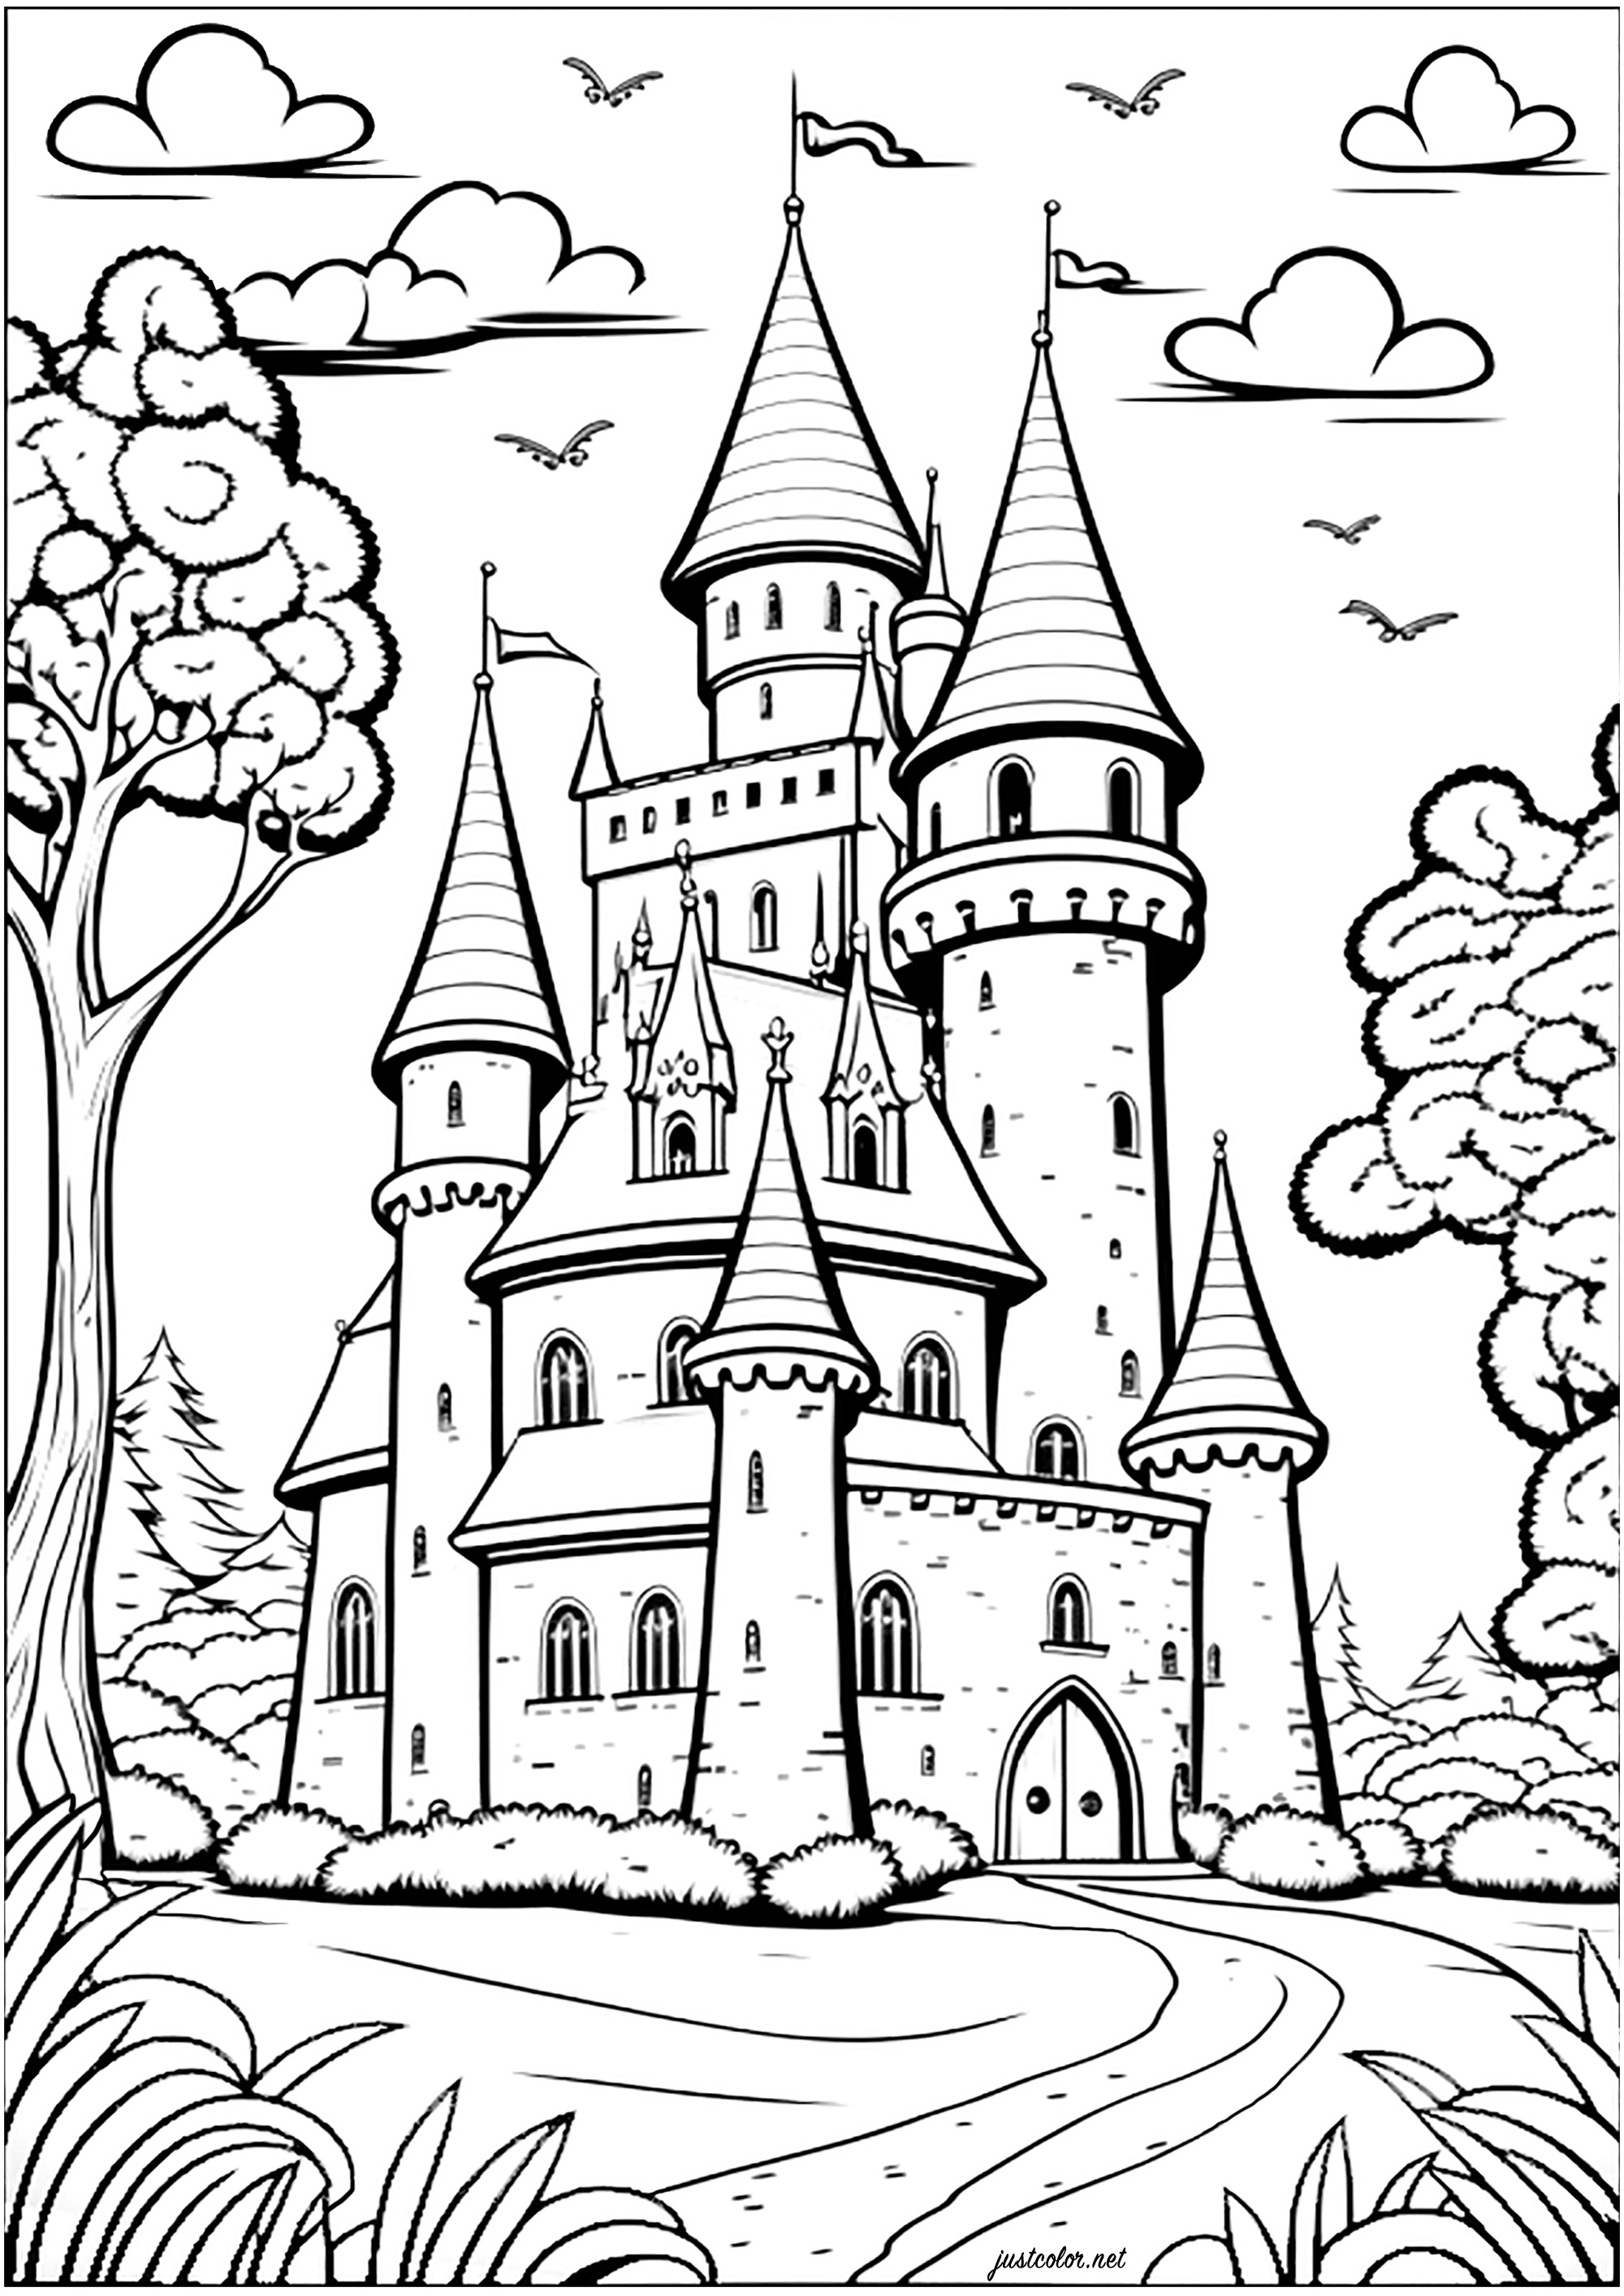 Ausmalen eines Schlosses in einem imaginären Königreich. Färben Sie alle Türmchen, Fenster, Türen und Wände für einen verzauberten Moment!